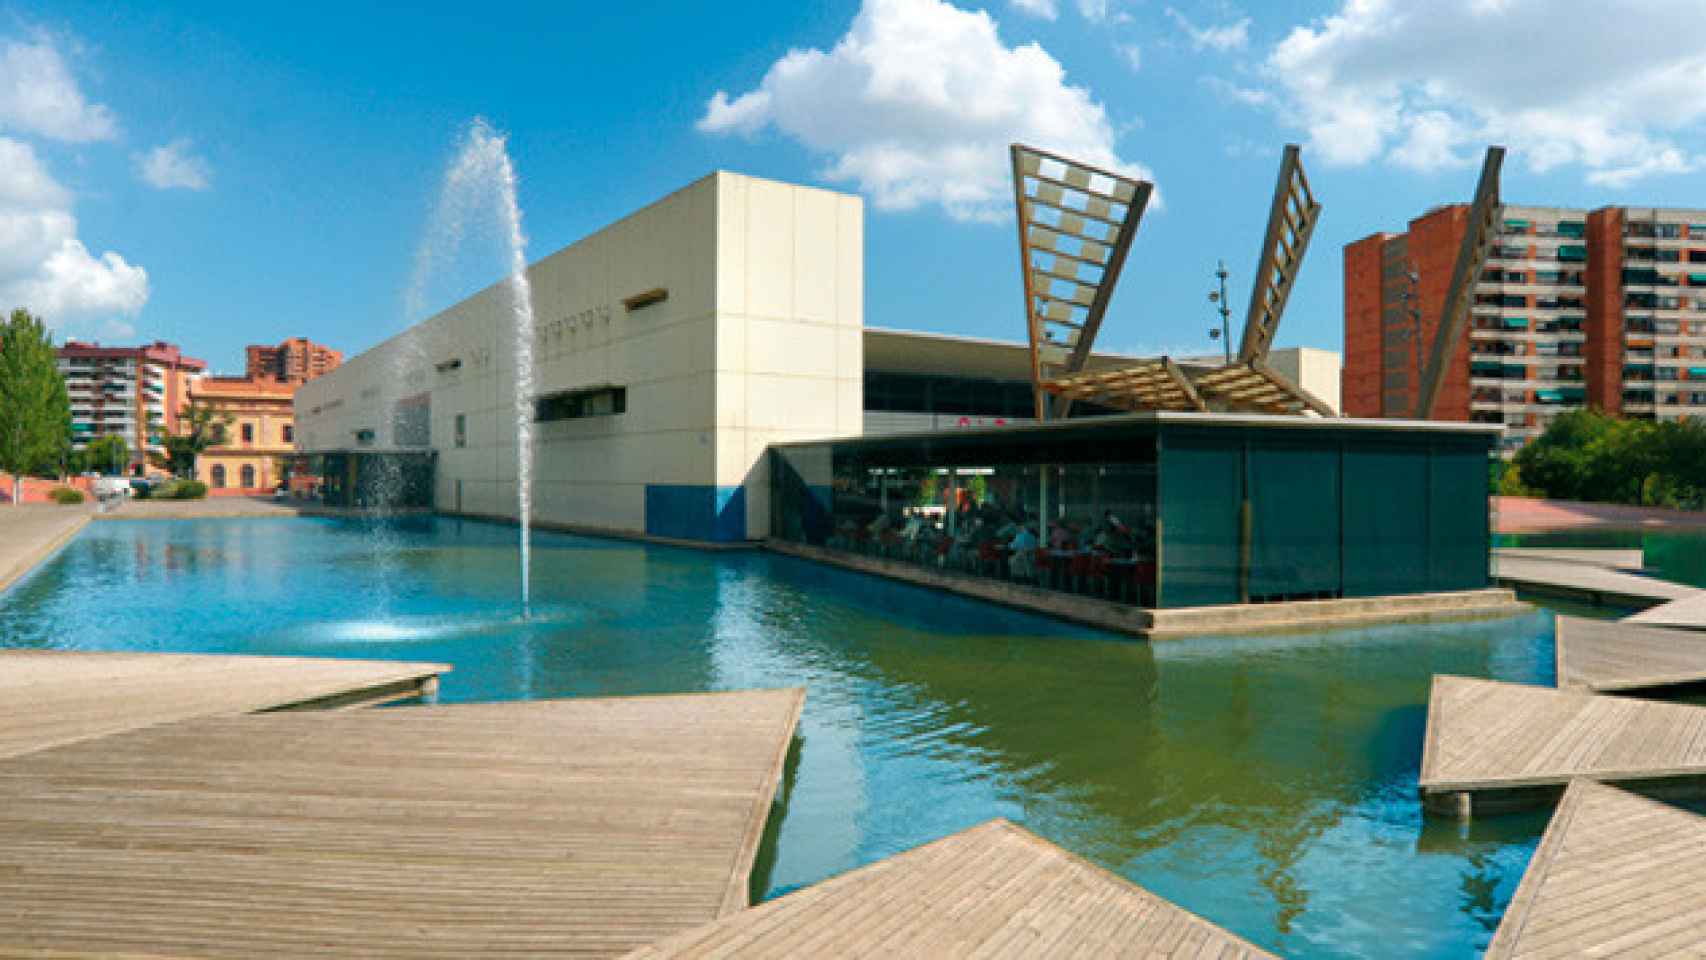 El parque tecnológico Barcelona Activa, donde iGrid tiene su sede / CG